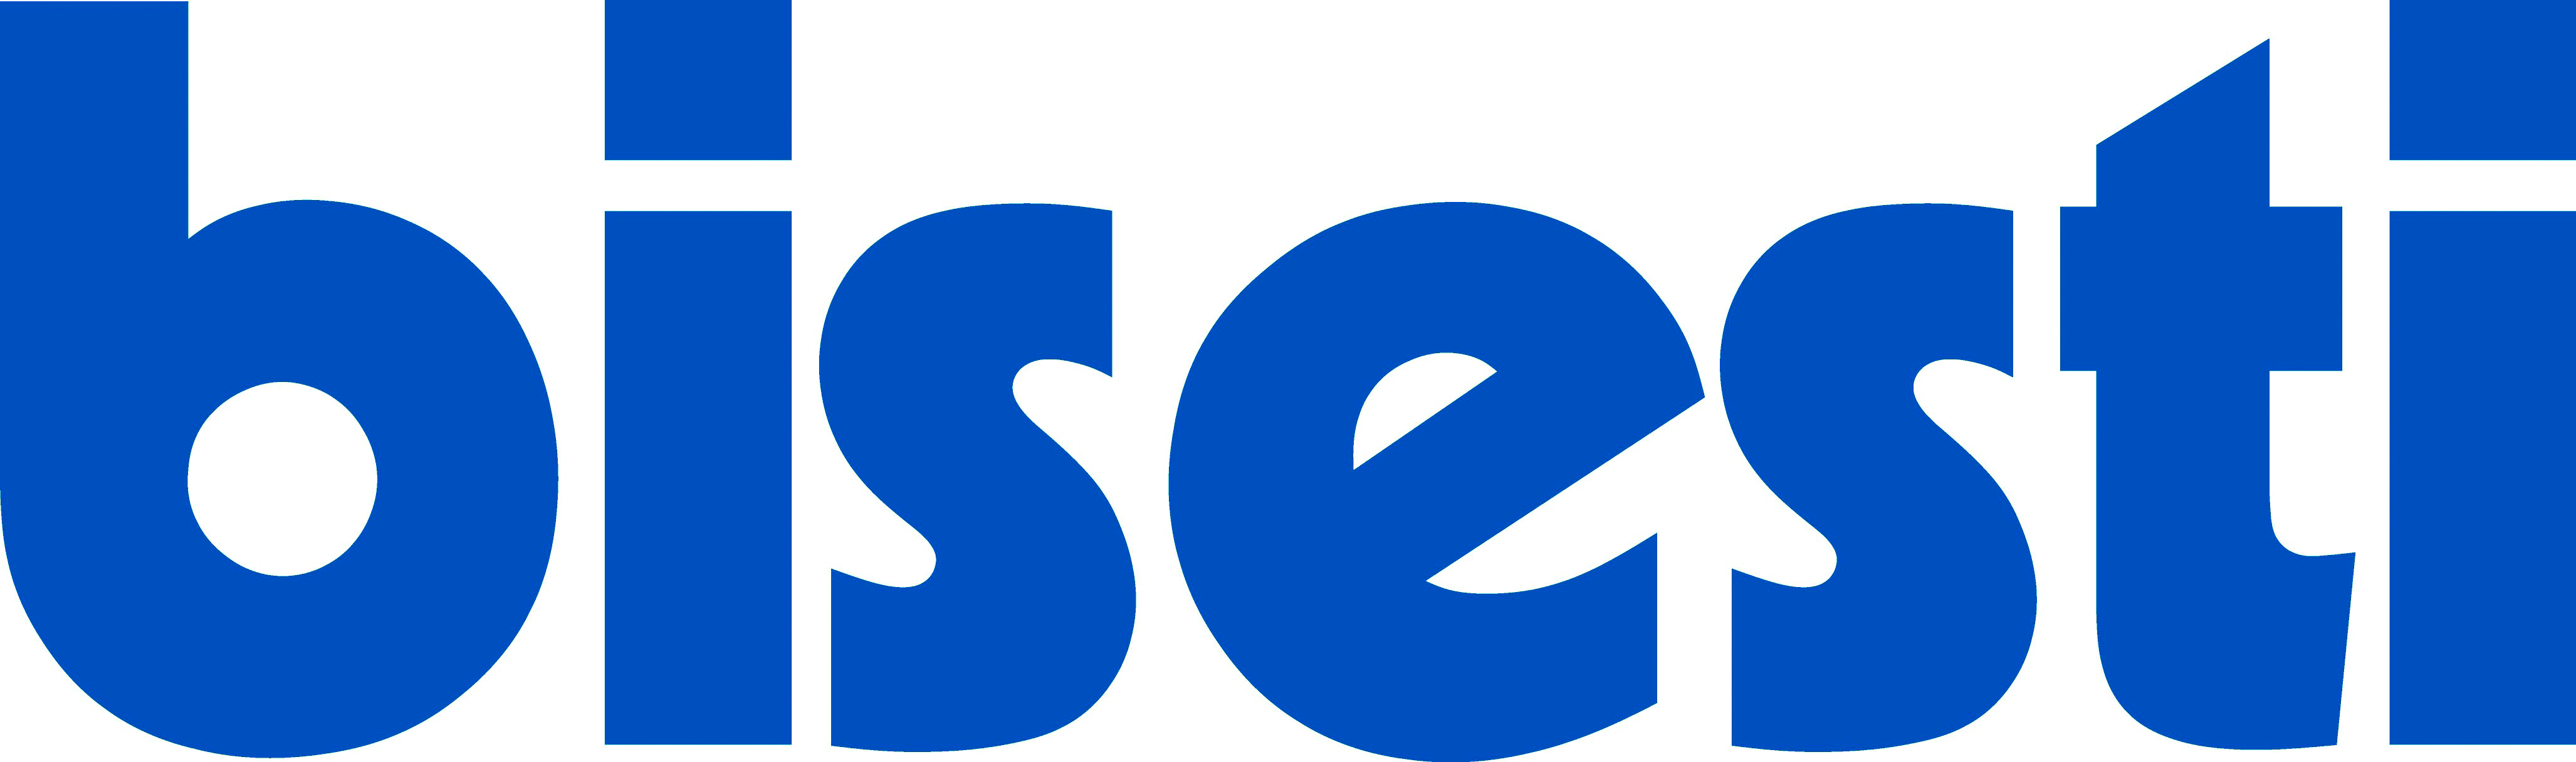 Logo_Bisesti